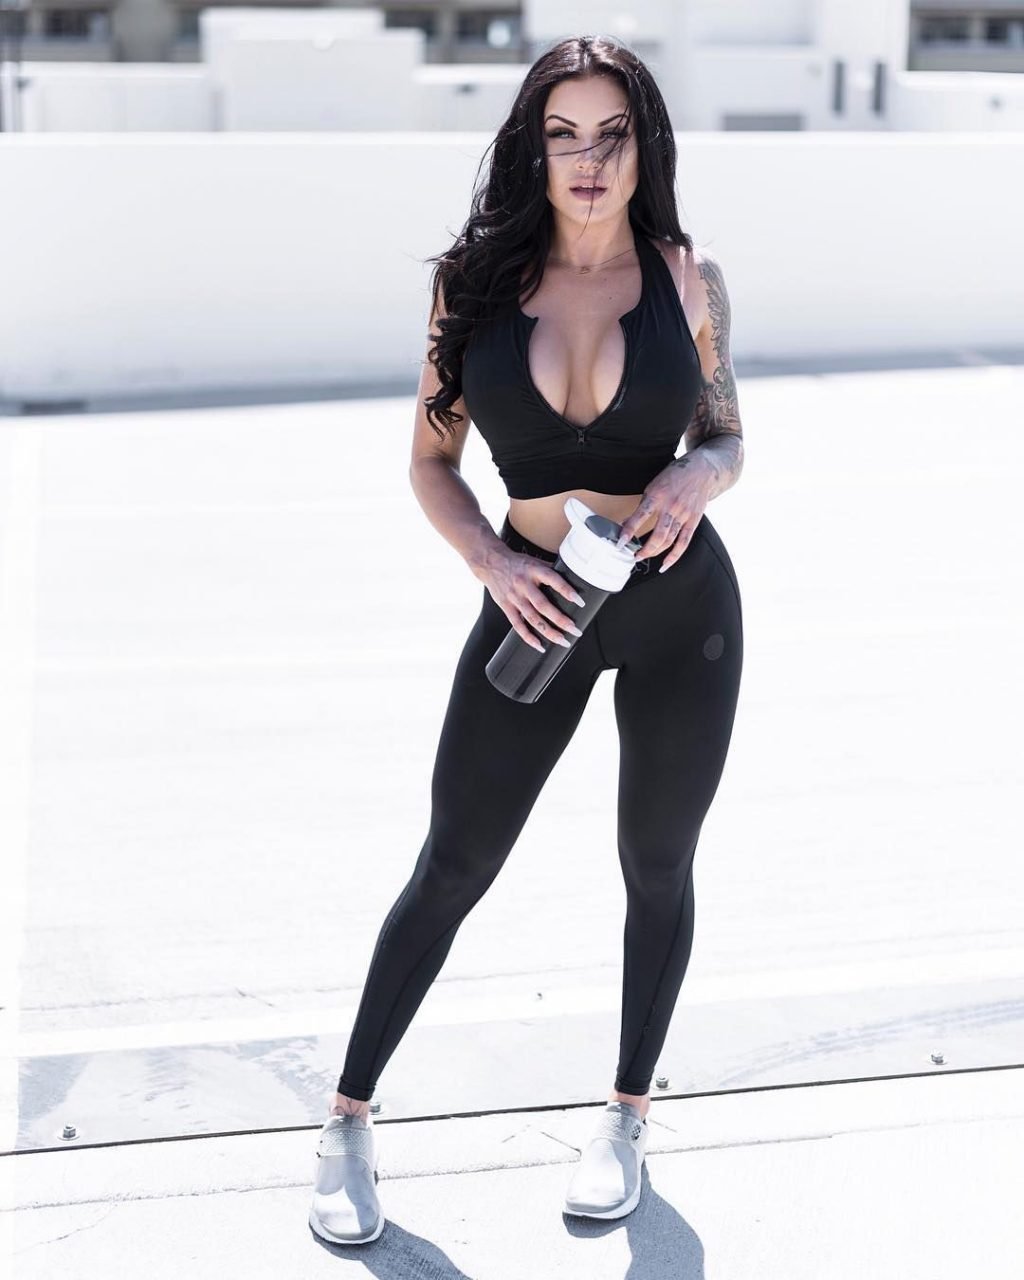 Tasha Mackenzie Big Ass Model With Fitness Body